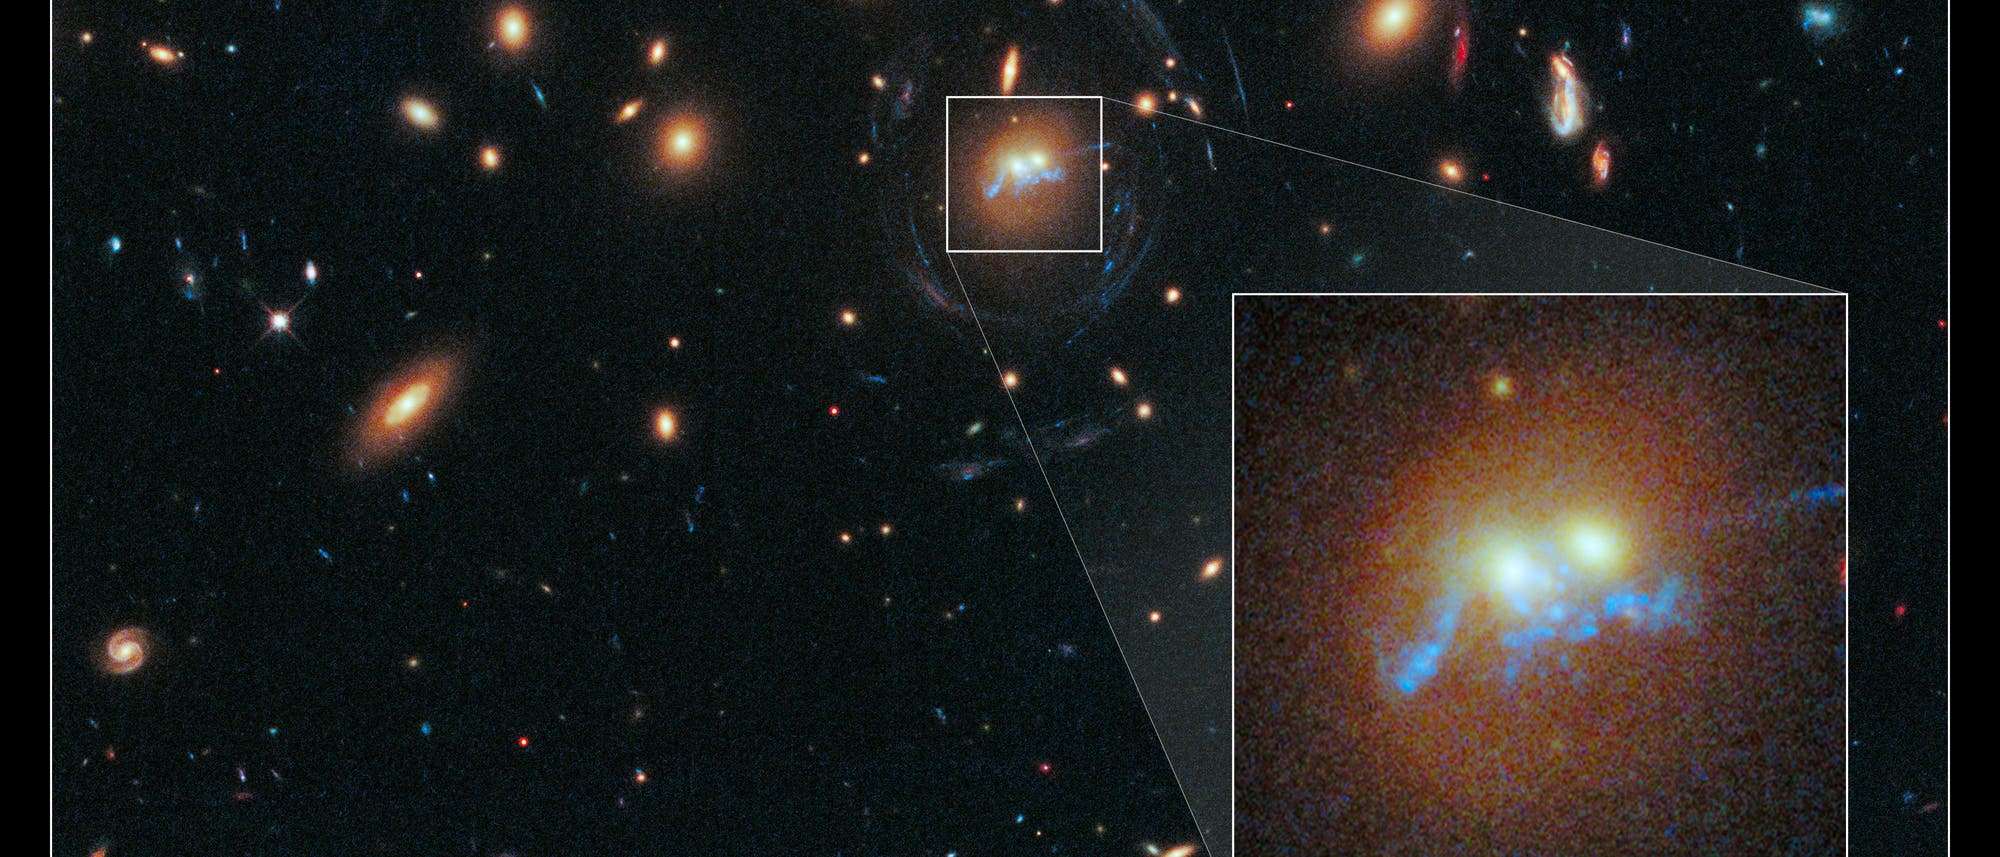 Zwei verschmelzende Galaxien im Galaxienhaufen SDSS J1531+3414 im Sternbild Nördliche Krone. Aufnahme des Weltraumteleskops Hubble.